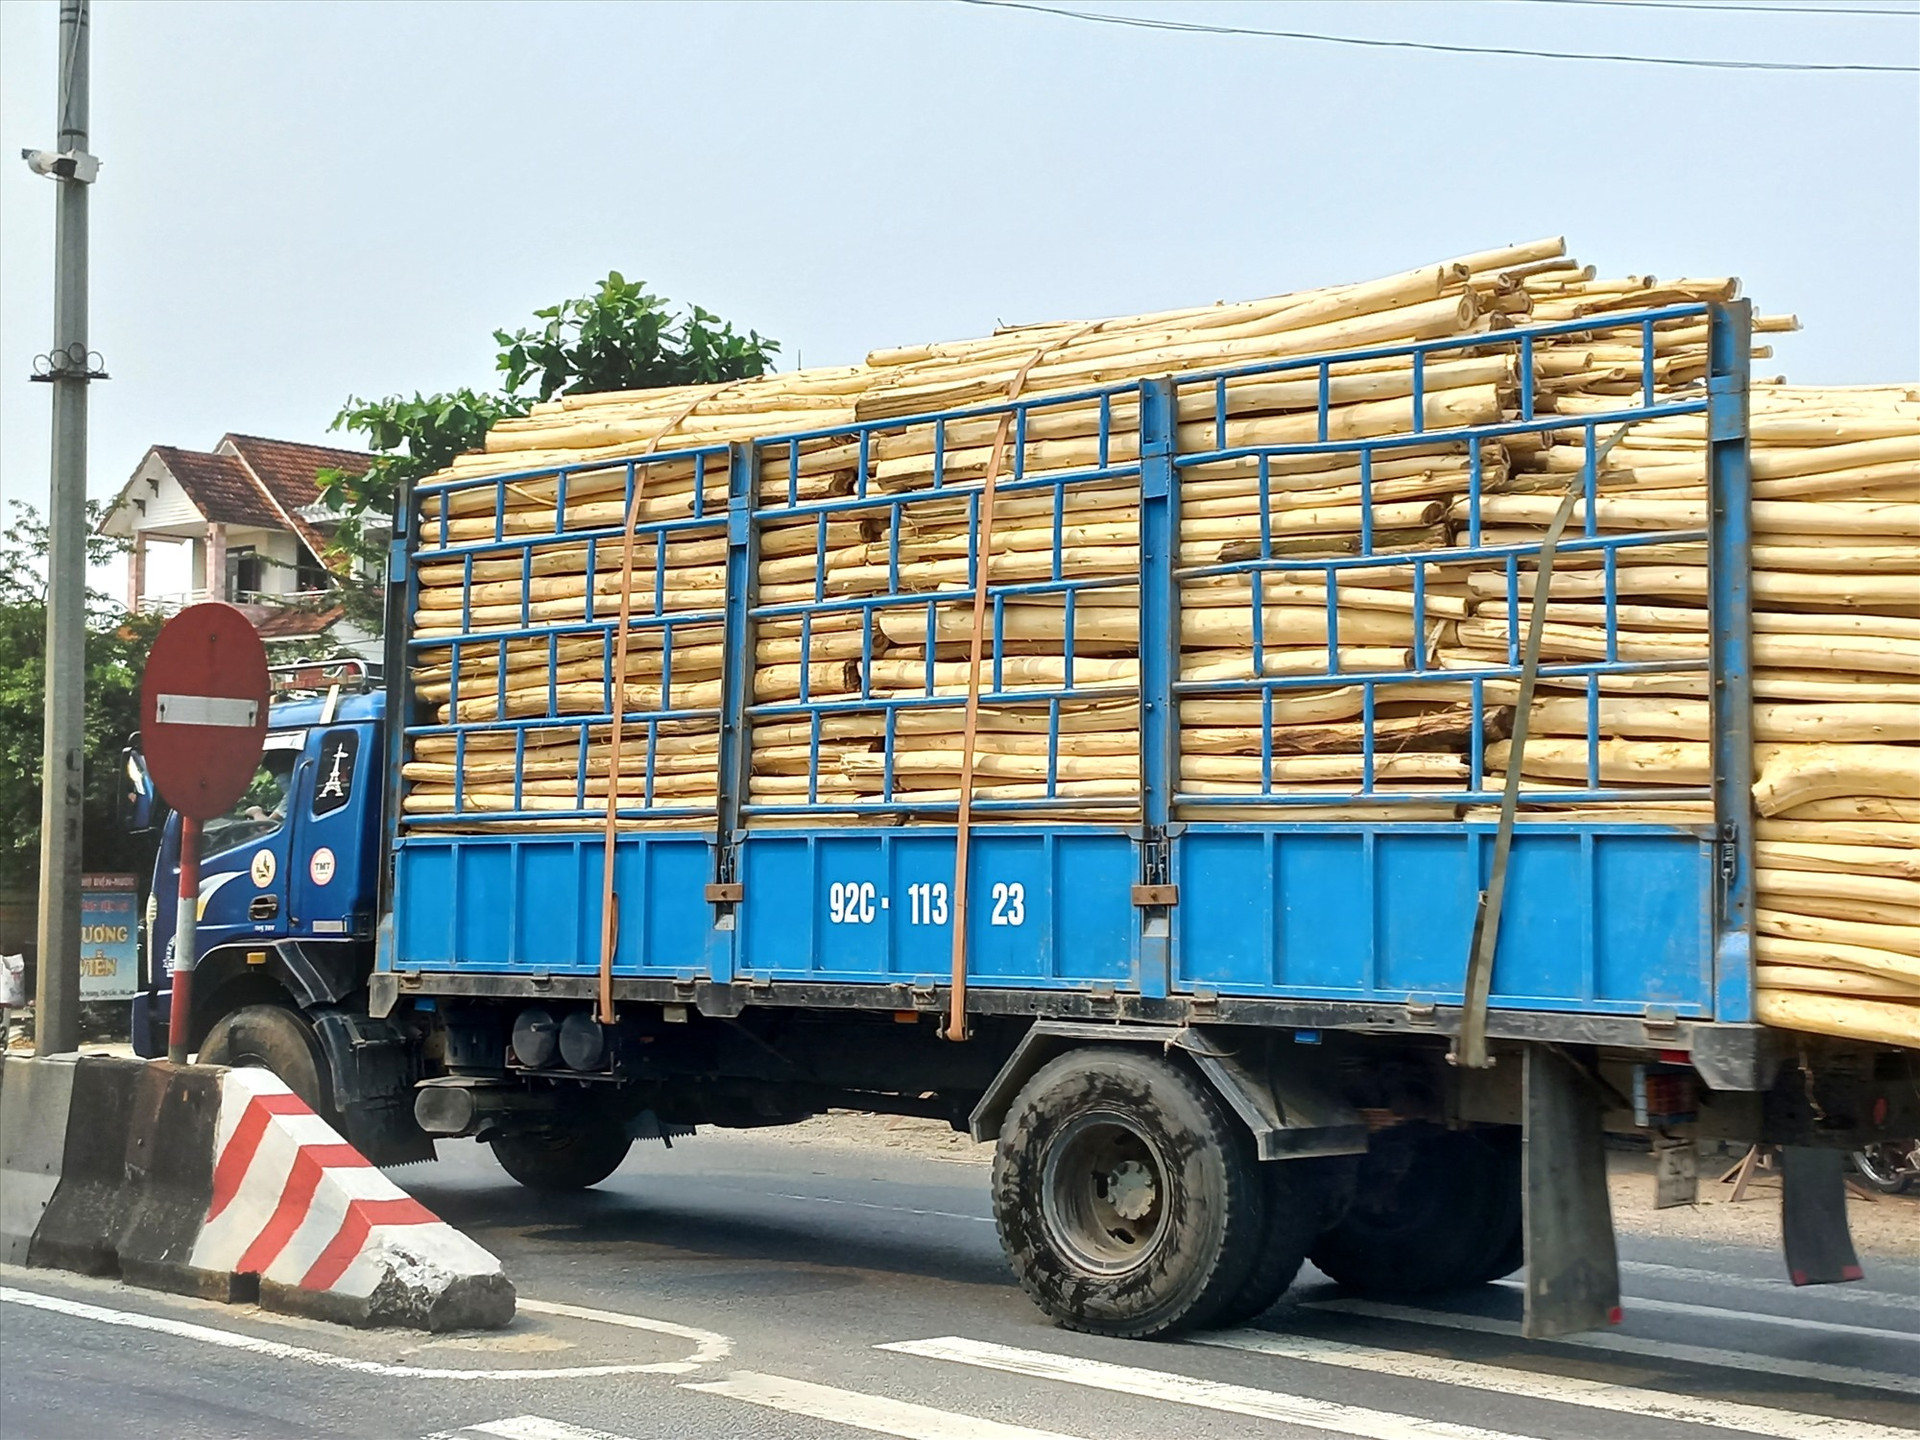 Xe tải chở keo quá kích thước thành, thùng chạy trên quốc lộ 1 qua Quảng Nam tiềm ẩn nguy cơ gây tai nạn giao thông. Ảnh: SC